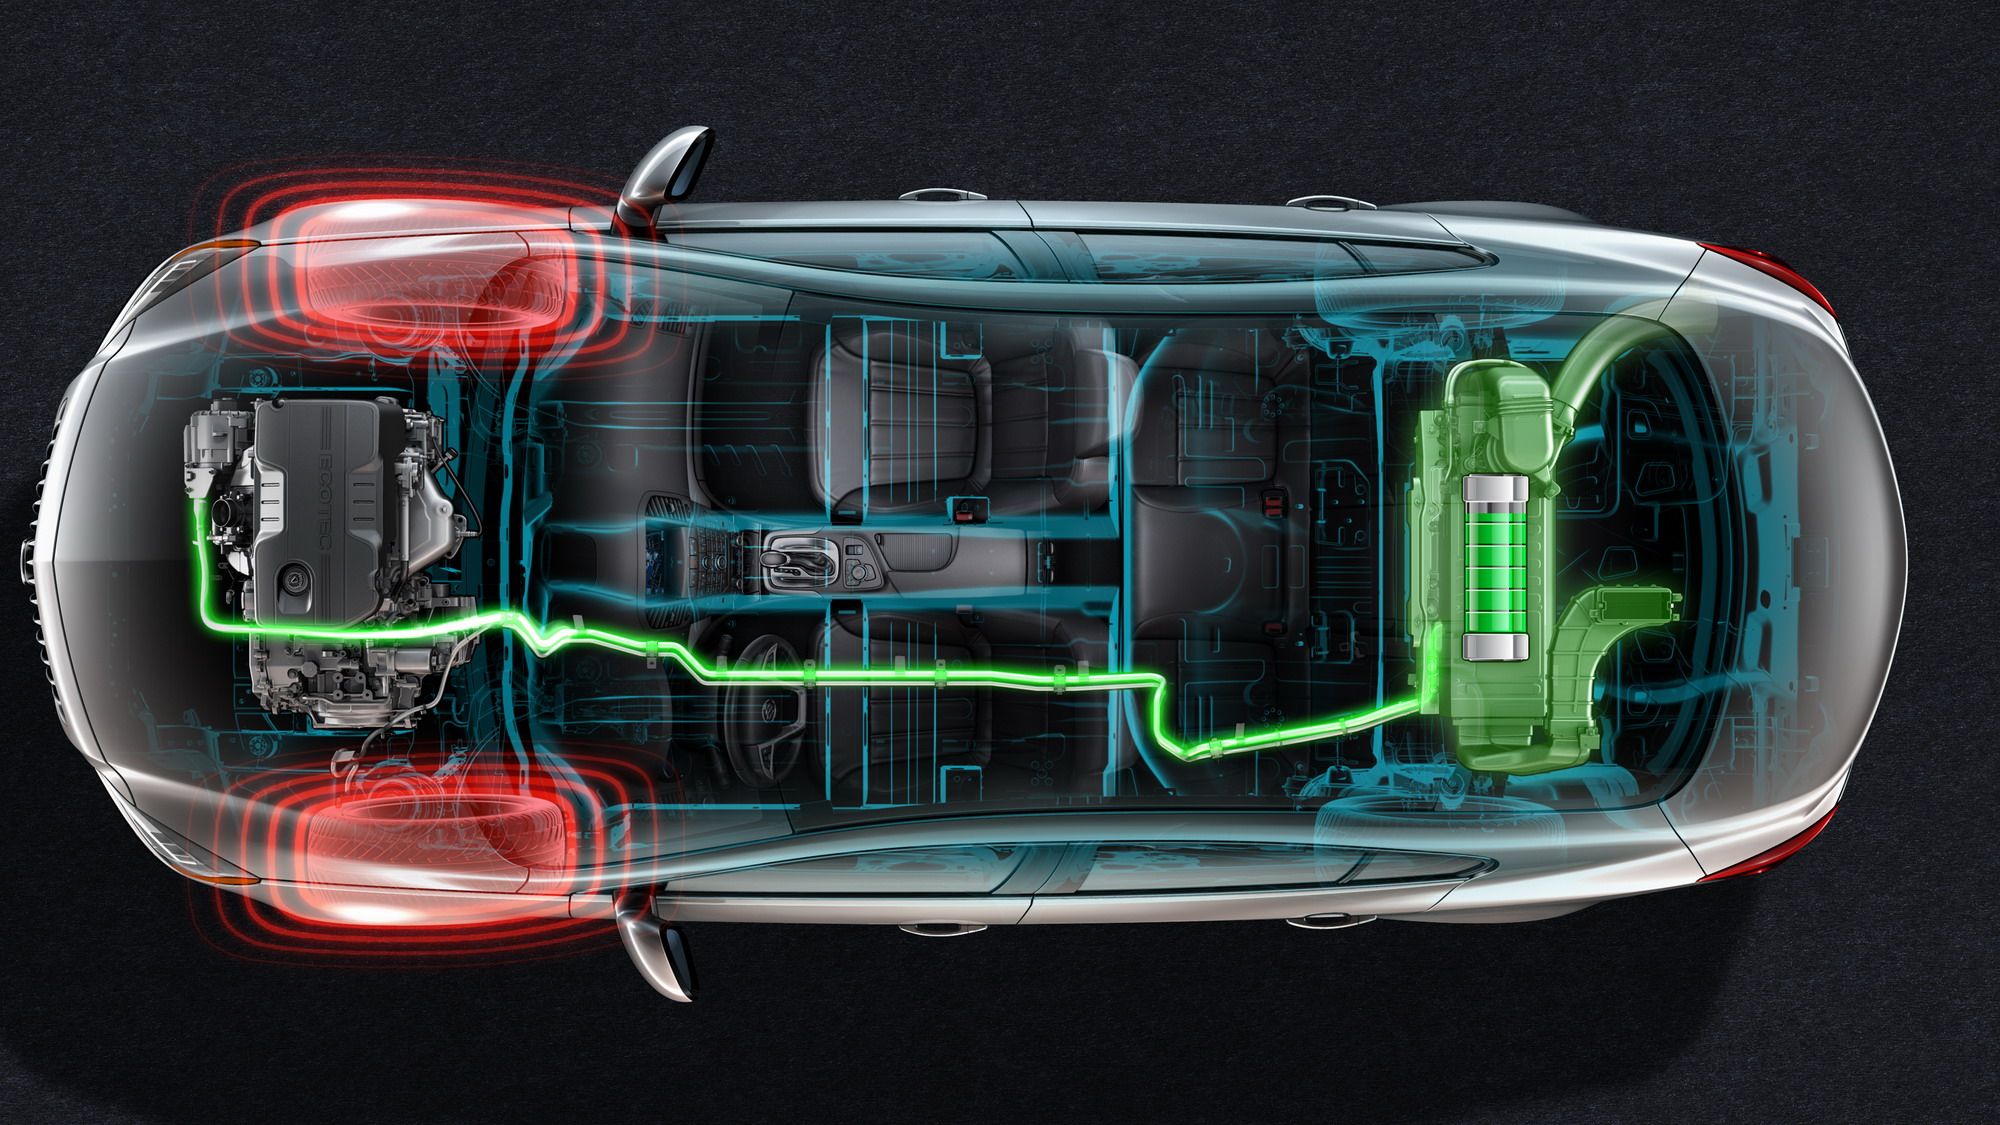 2012 Buick Regal eAssist